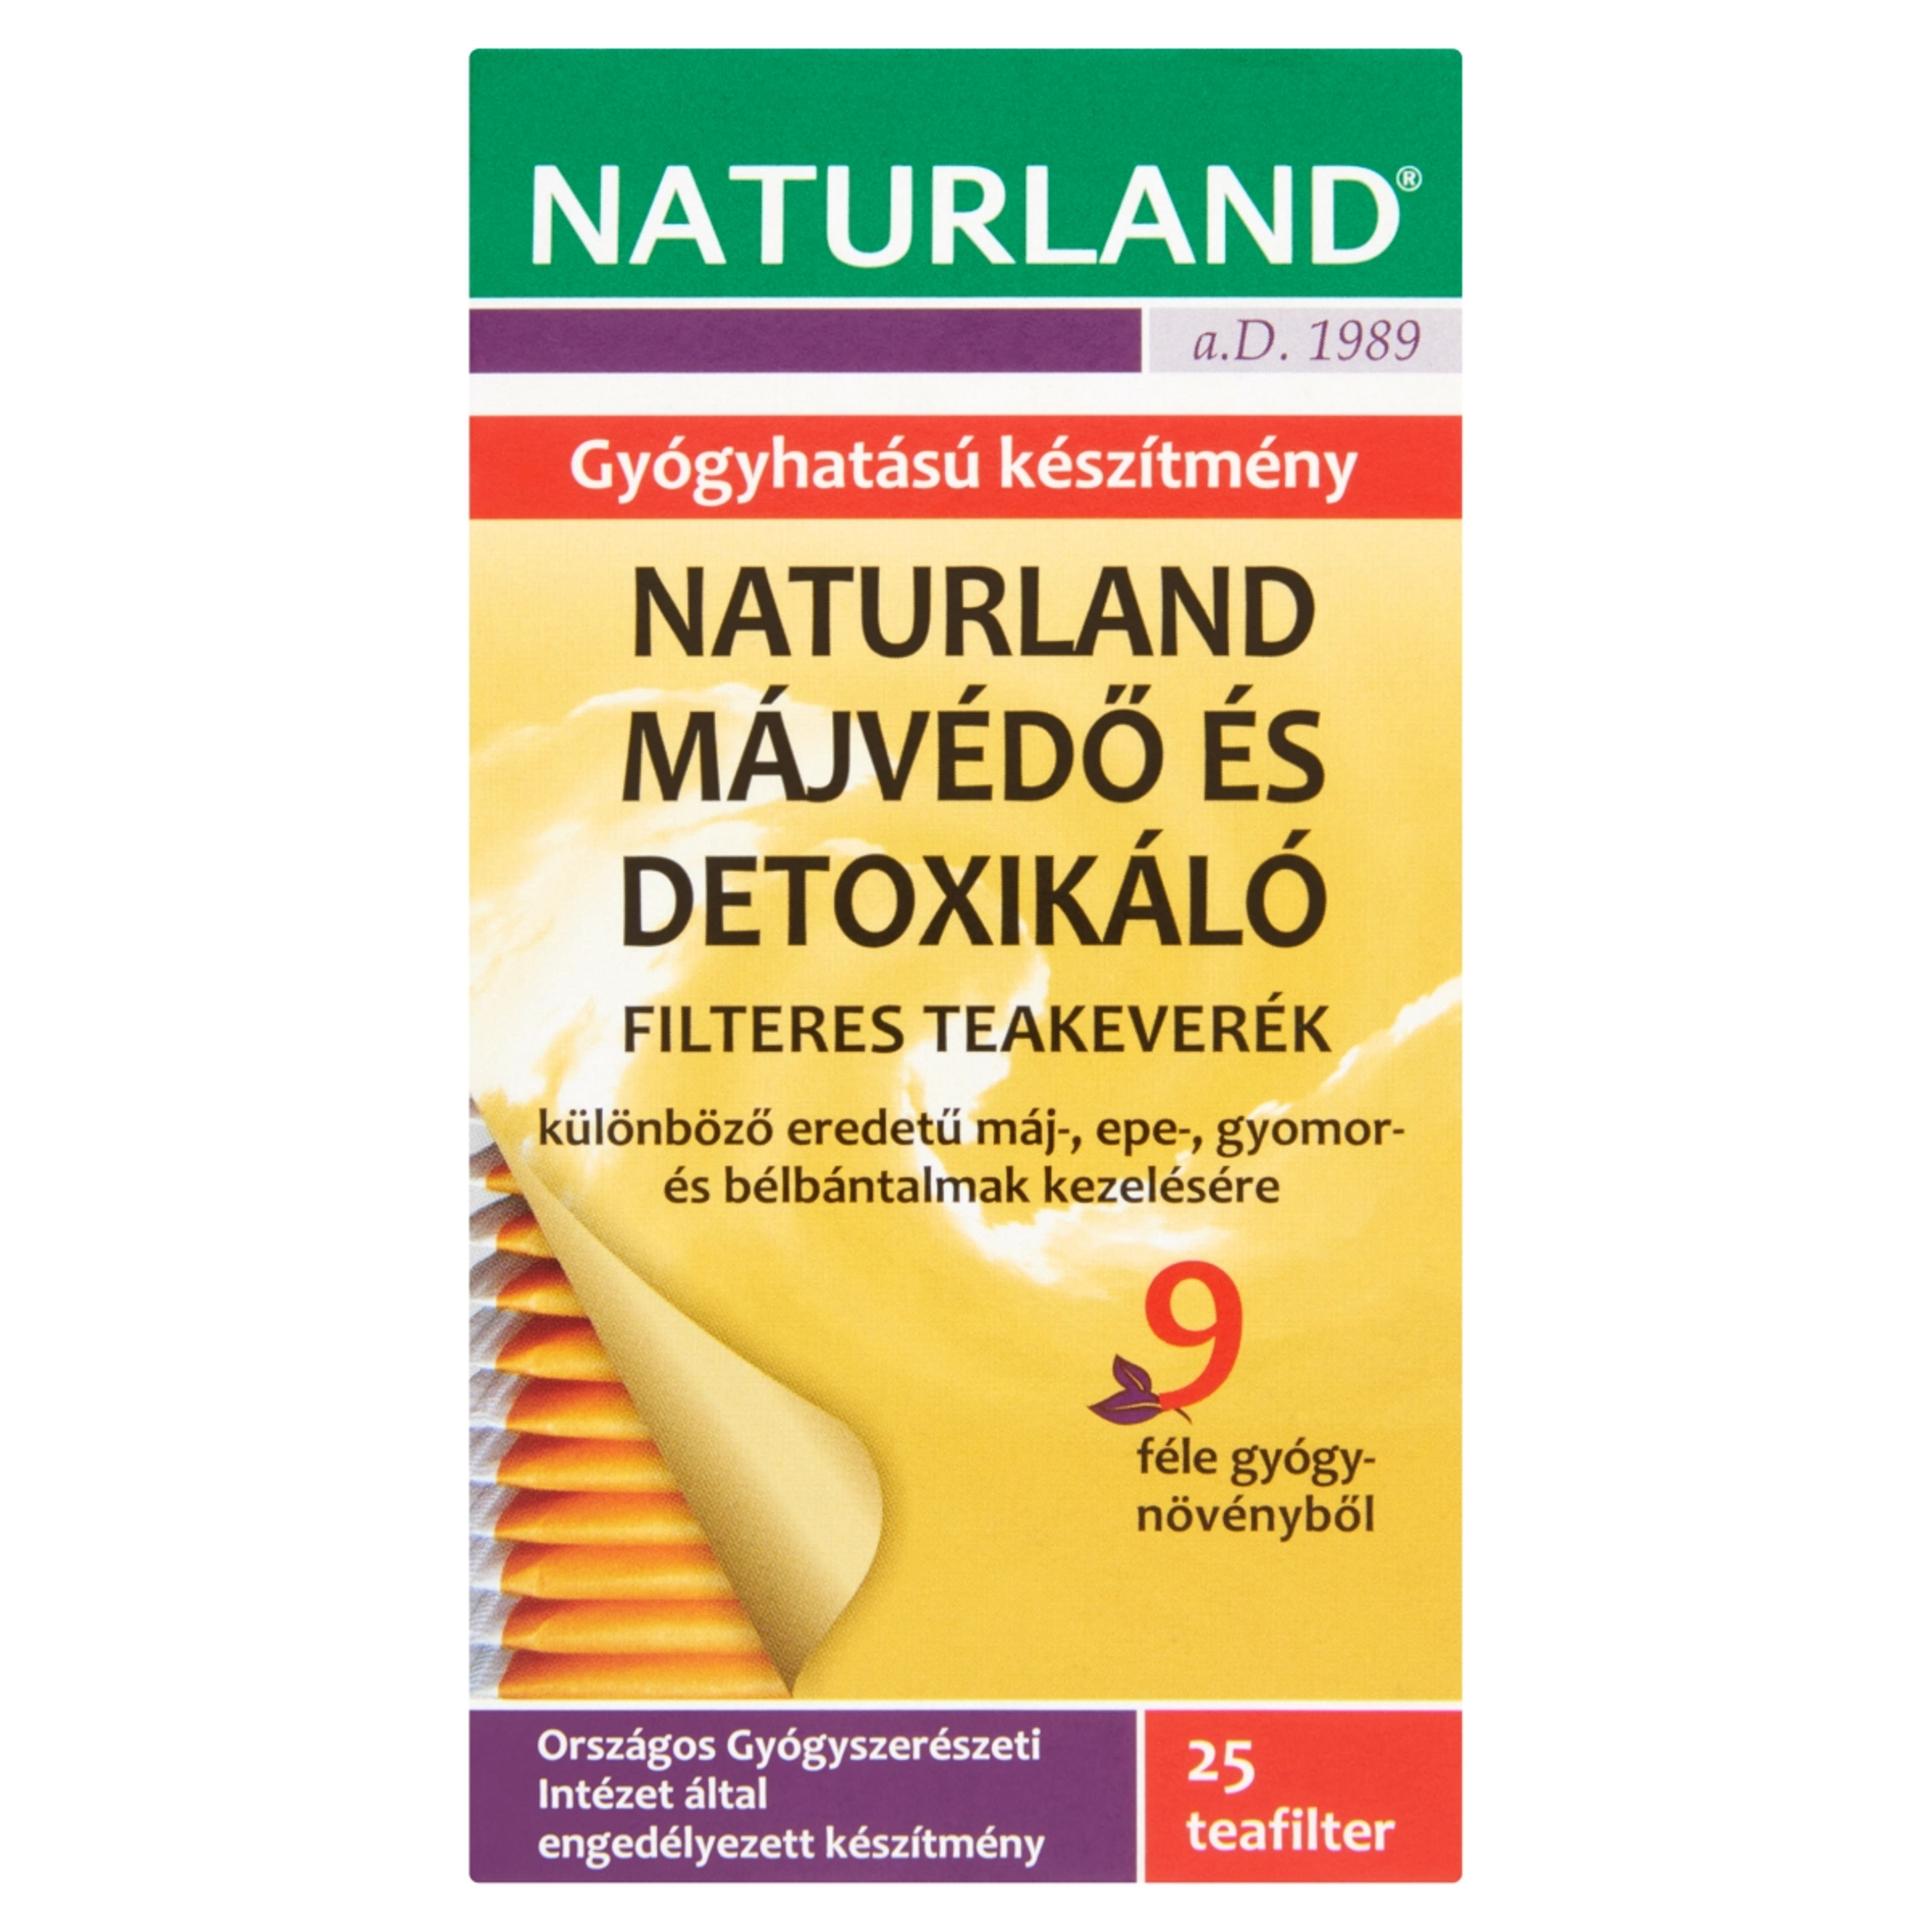 Naturland Májvédő és detoxikáló teakeverék - 25x1,5 g